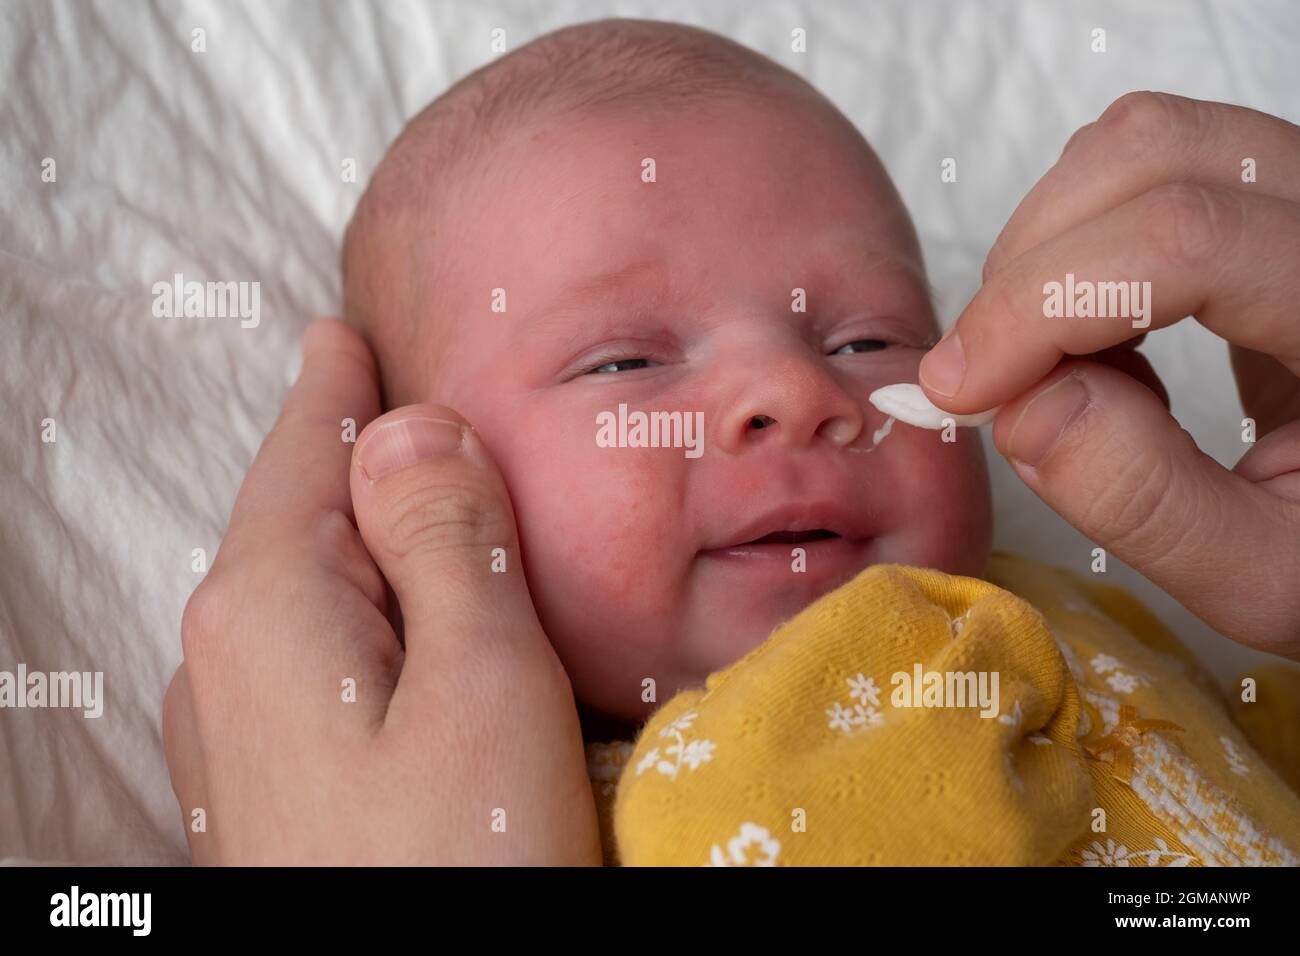 Die Nase des Neugeborenen mit einem Wattestäbchen von den Boogern reinigen  Stockfotografie - Alamy